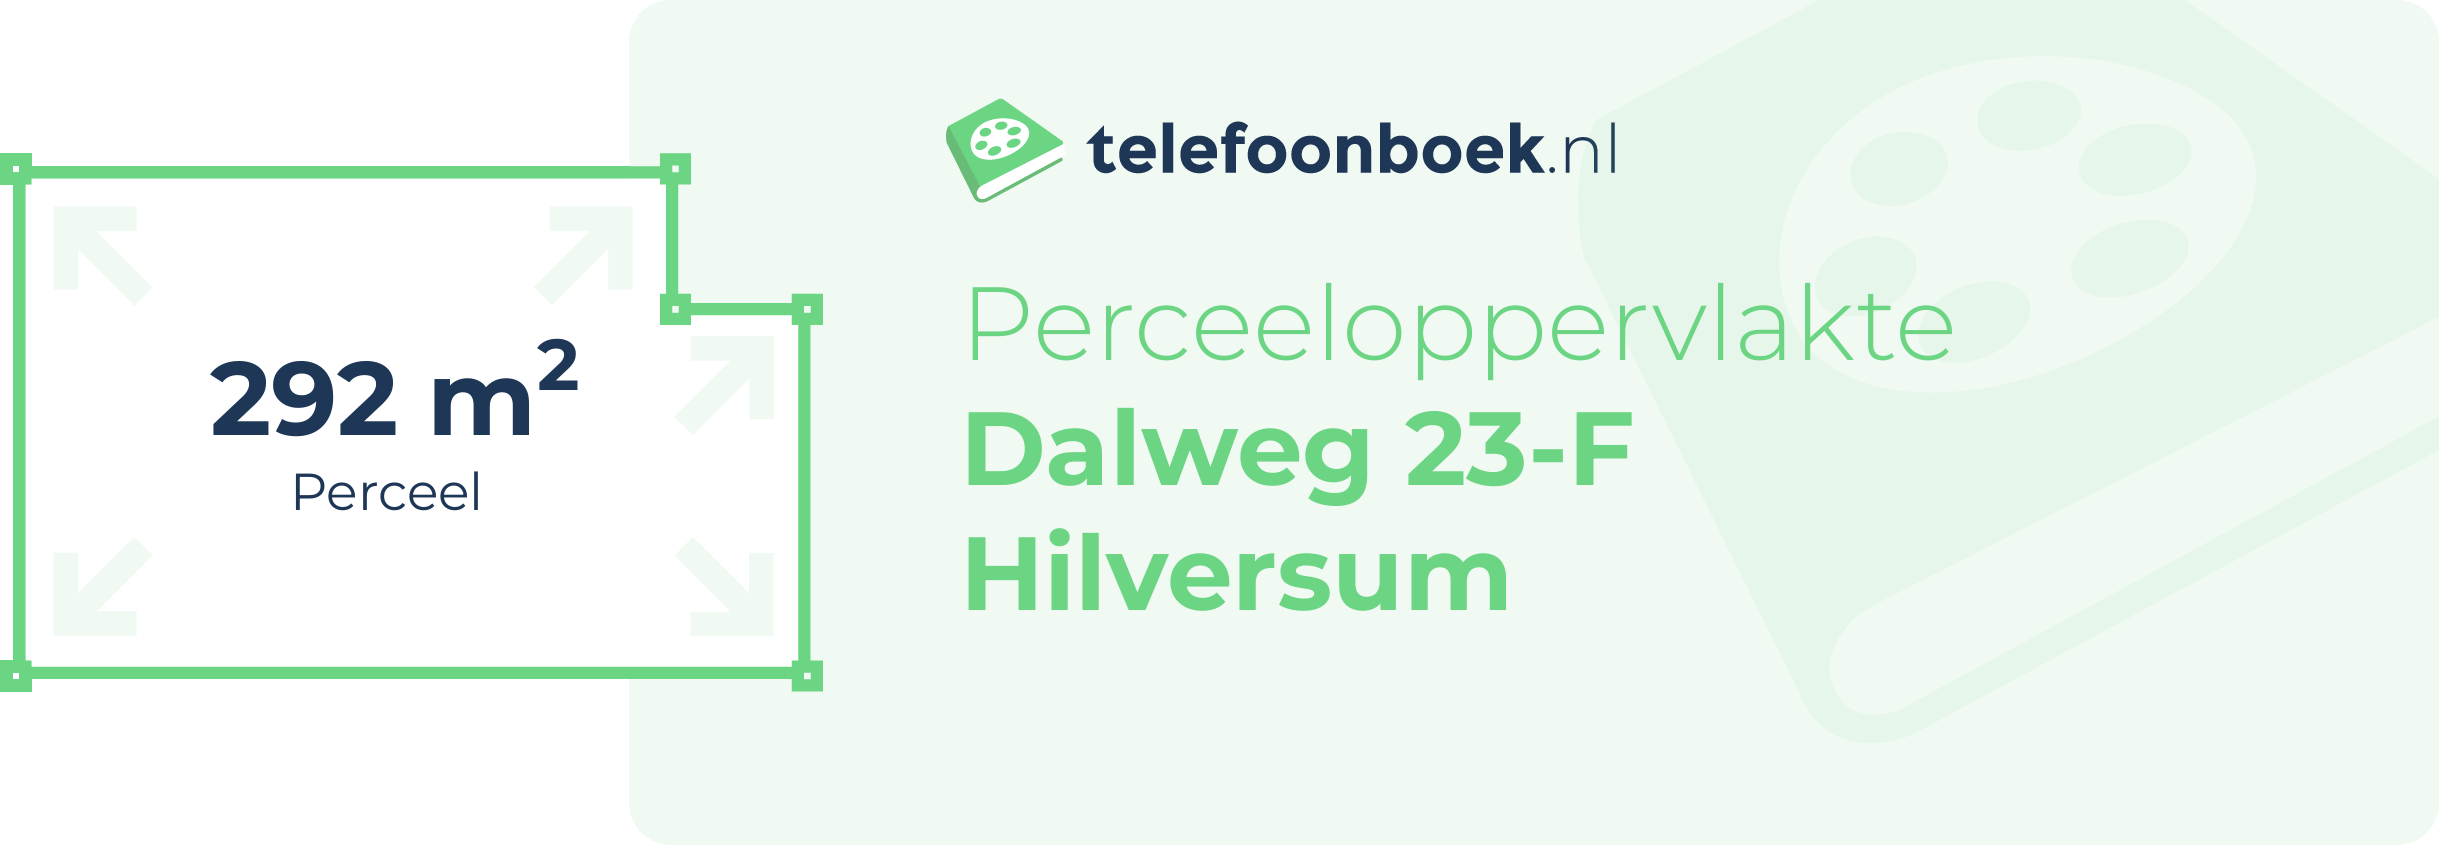 Perceeloppervlakte Dalweg 23-F Hilversum